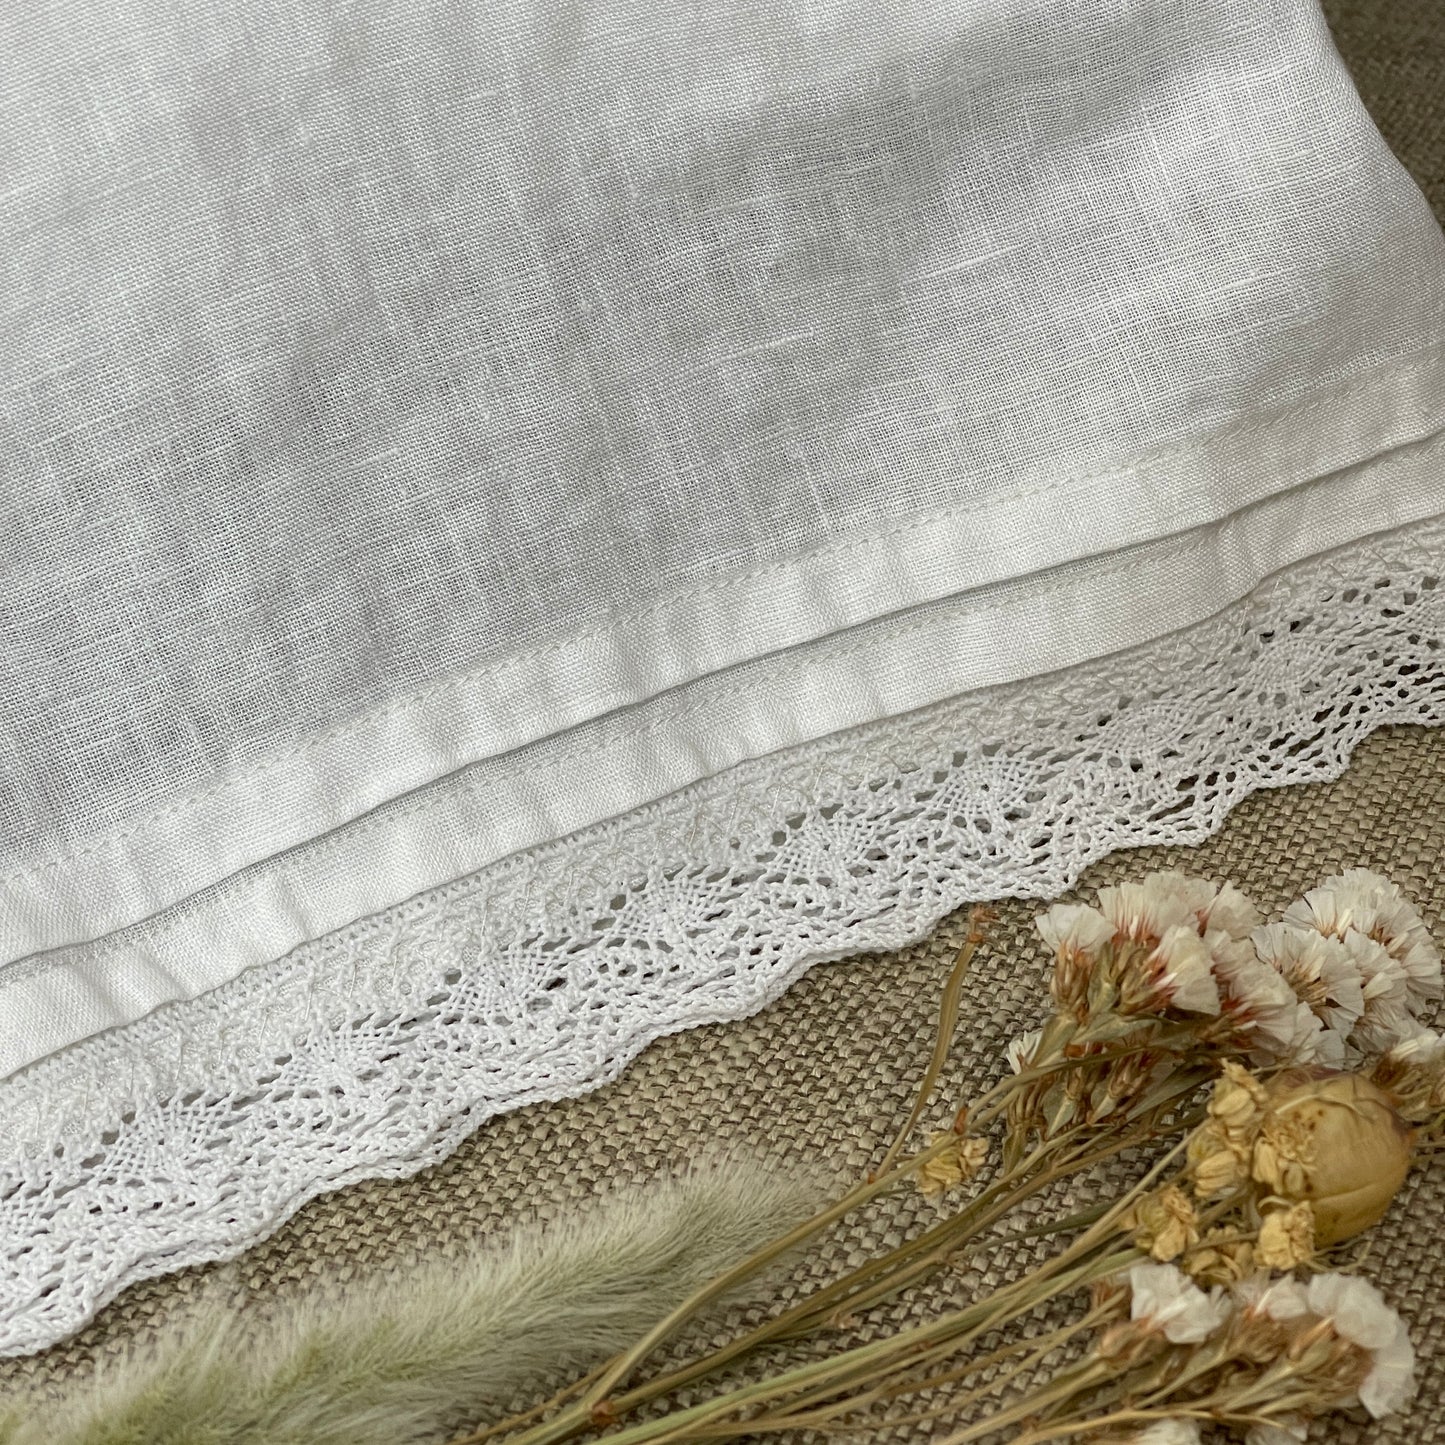 Nostalgia Off-white Flax Pillowcase with Lace